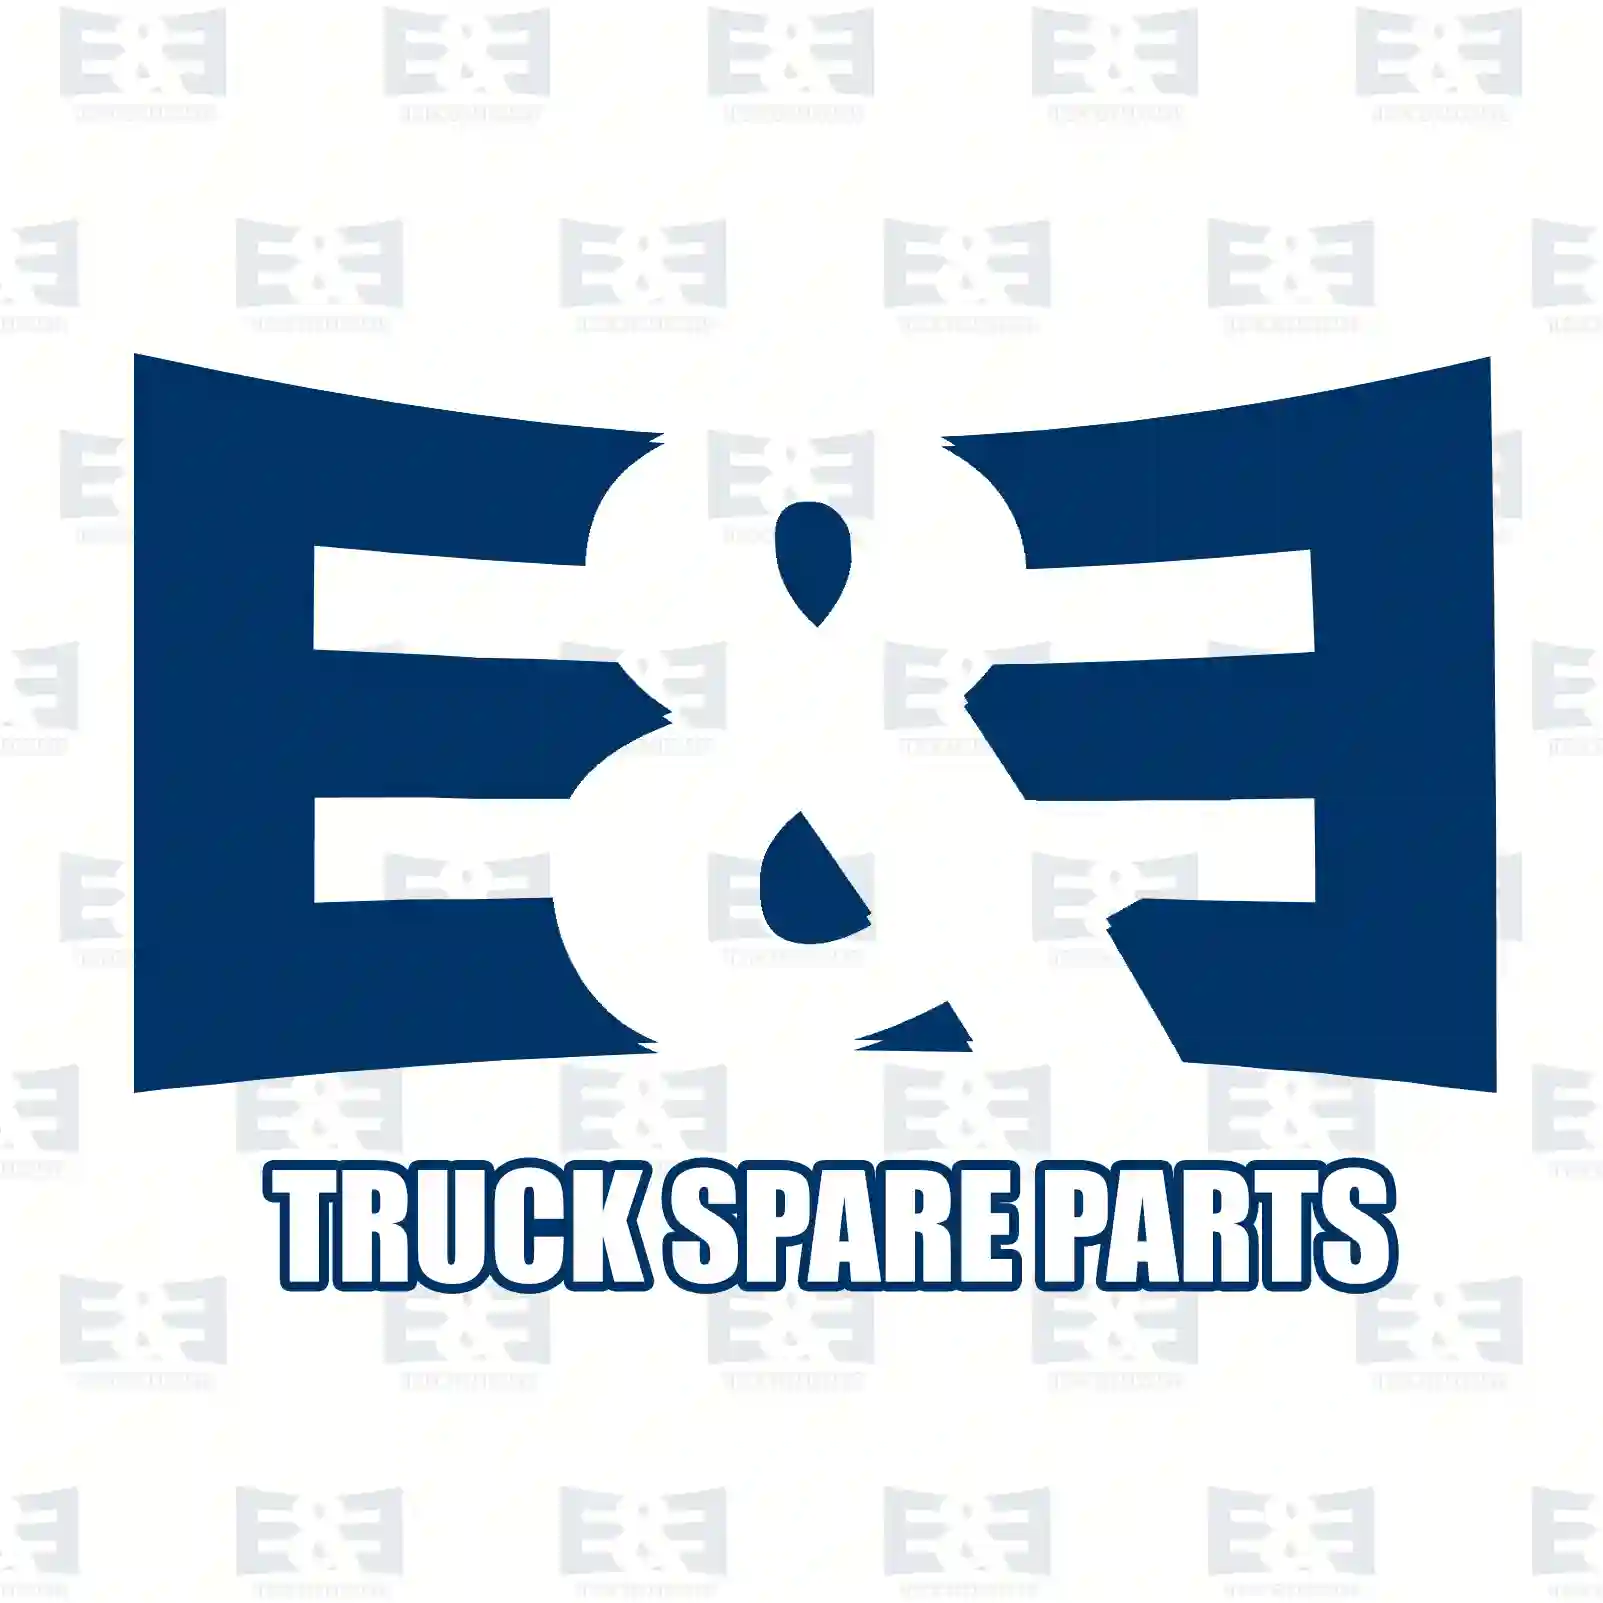 Radiator, 2E2203983, 81061016422, 81061016437, ||  2E2203983 E&E Truck Spare Parts | Truck Spare Parts, Auotomotive Spare Parts Radiator, 2E2203983, 81061016422, 81061016437, ||  2E2203983 E&E Truck Spare Parts | Truck Spare Parts, Auotomotive Spare Parts